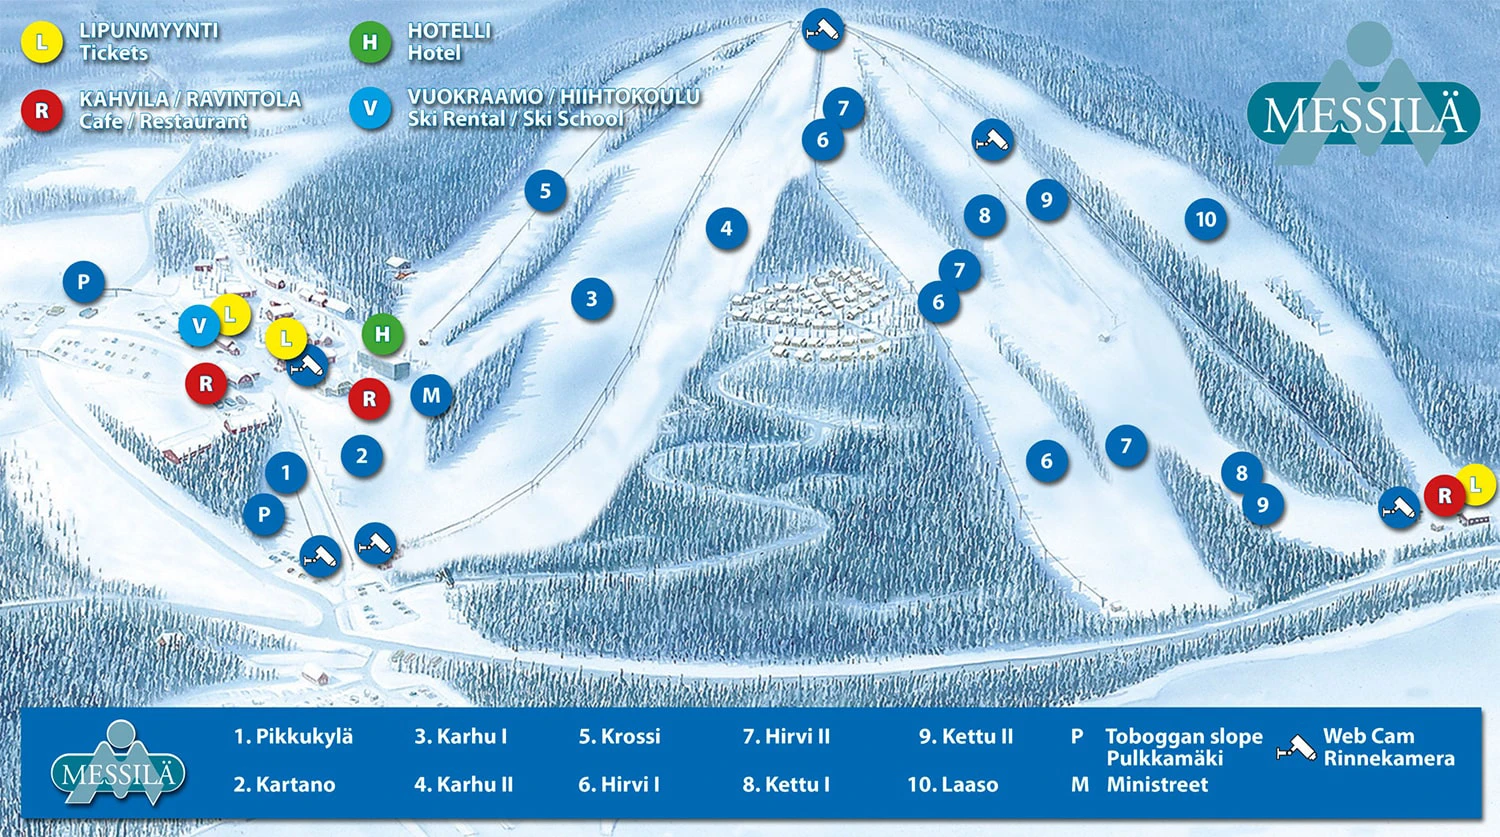 Messilä Ski Resort Slopemap